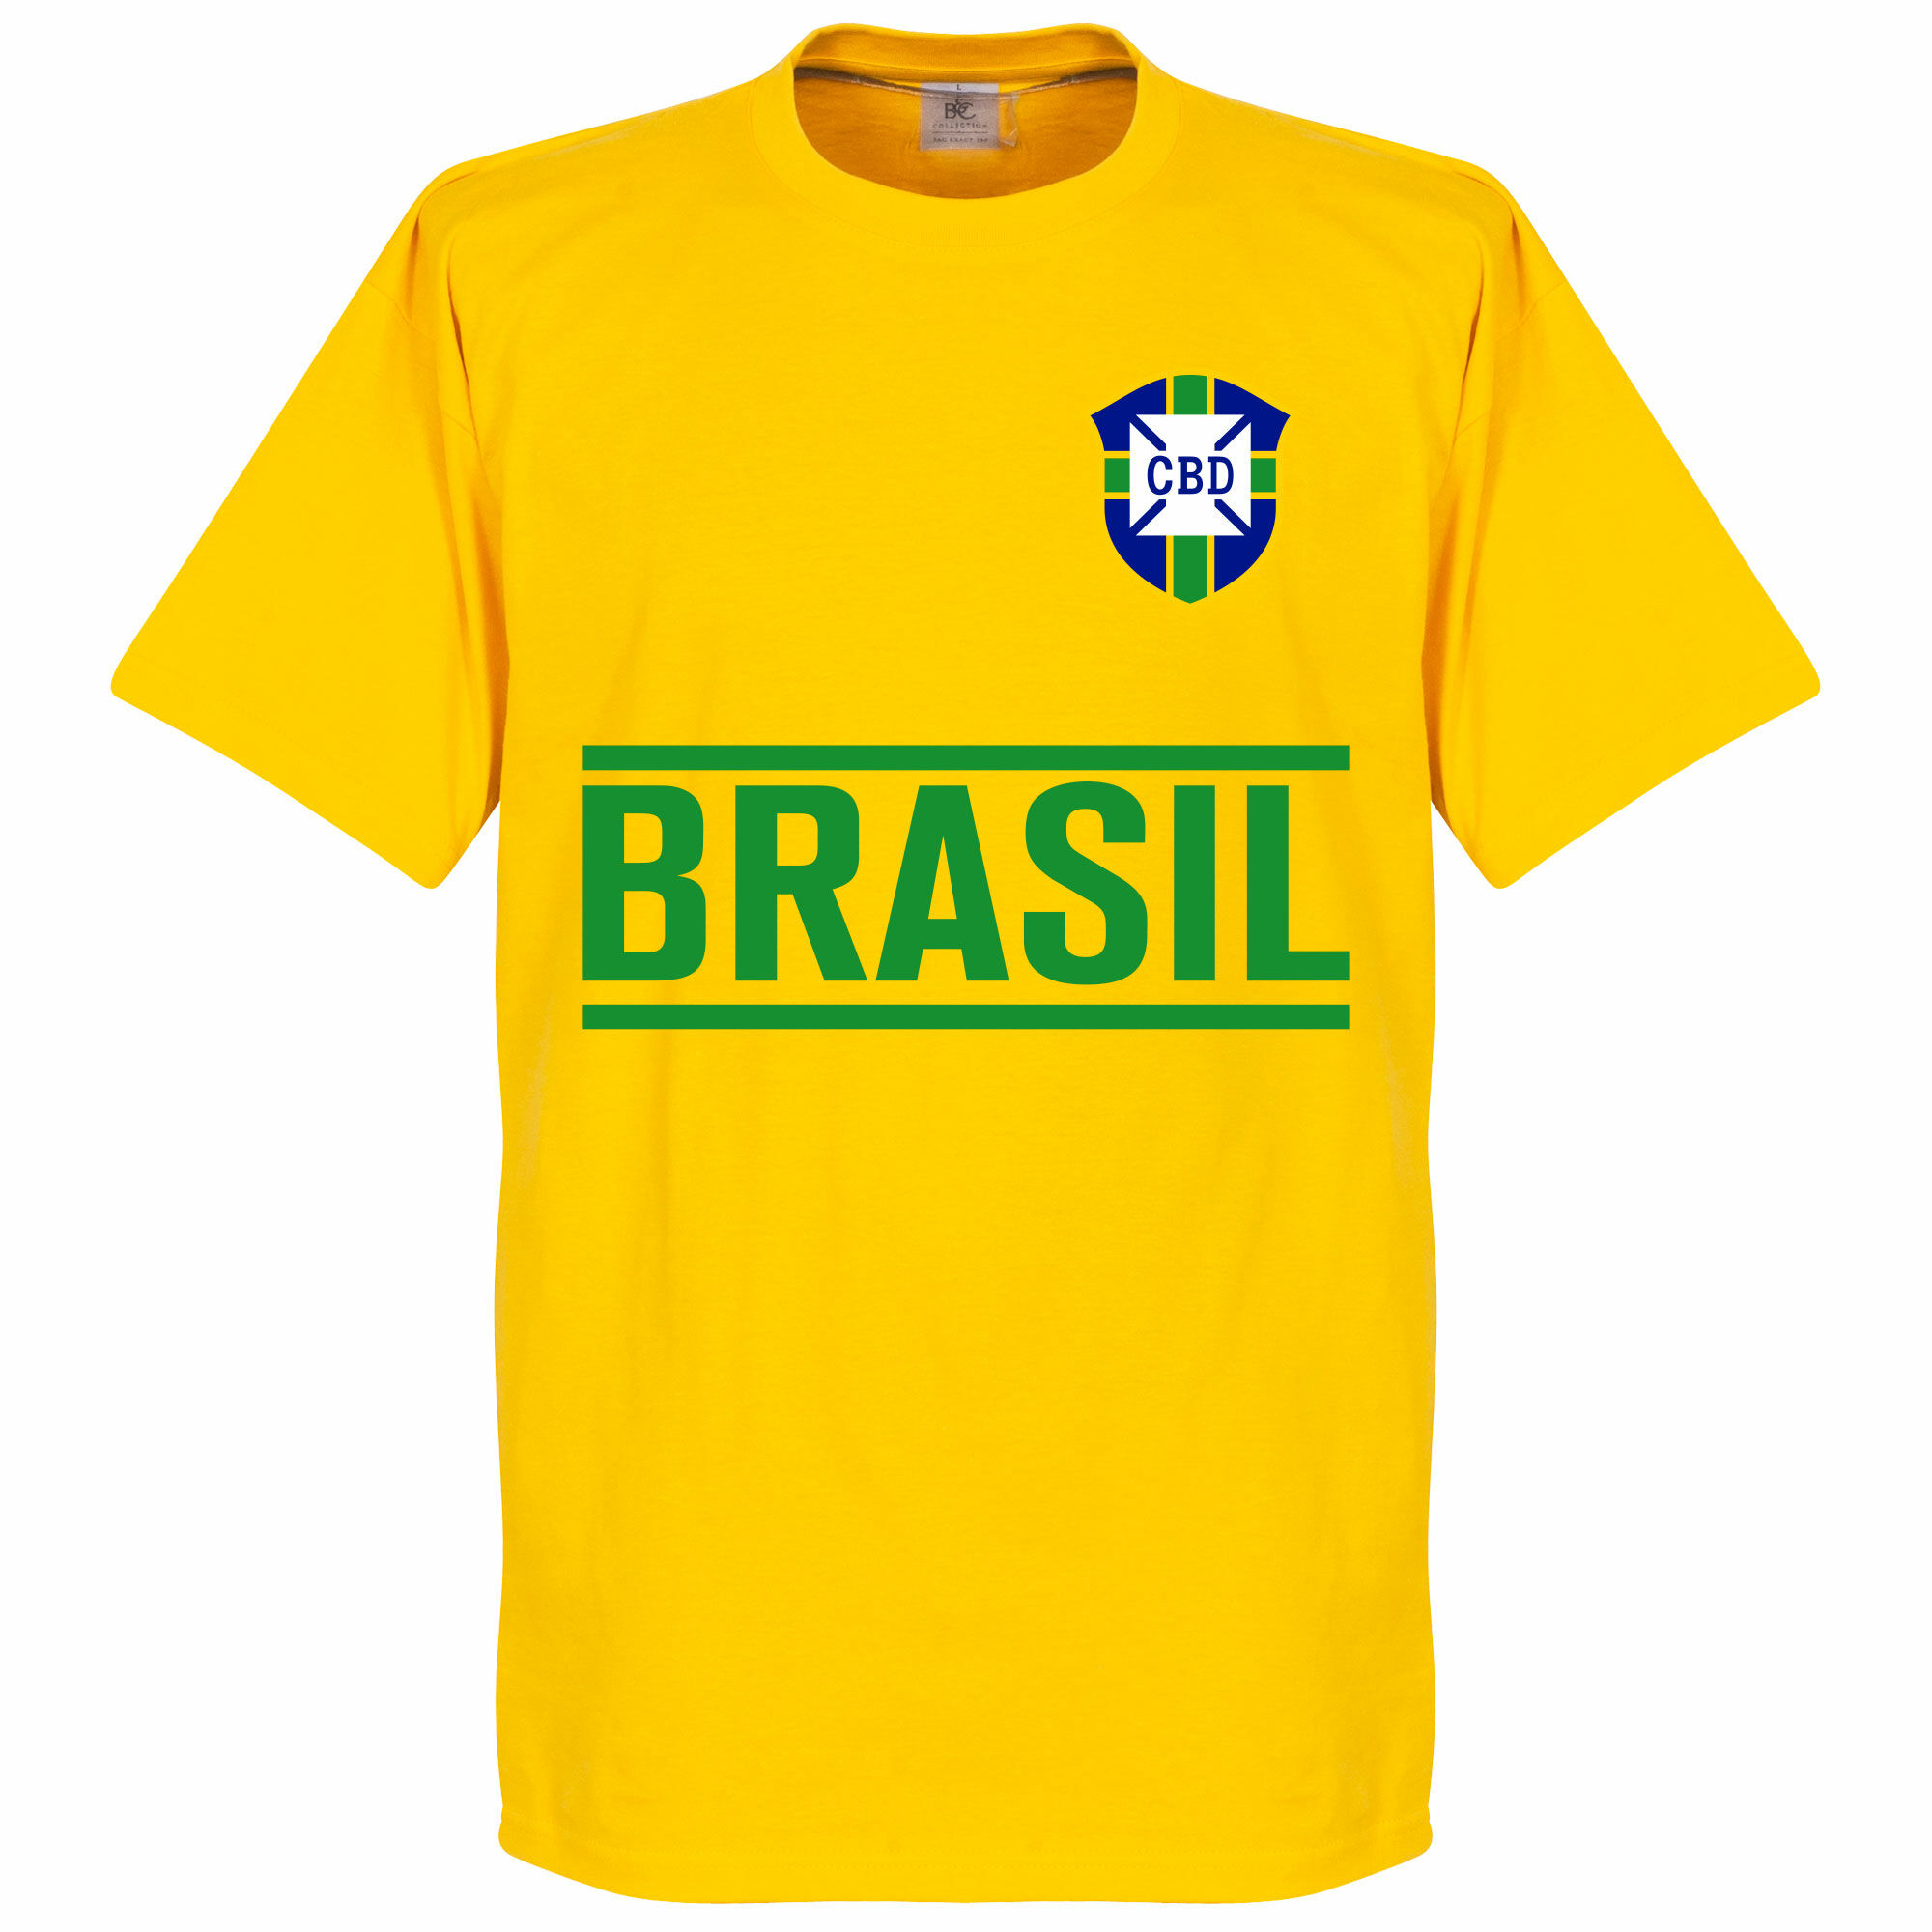 Brazílie - Tričko dětské - žluté